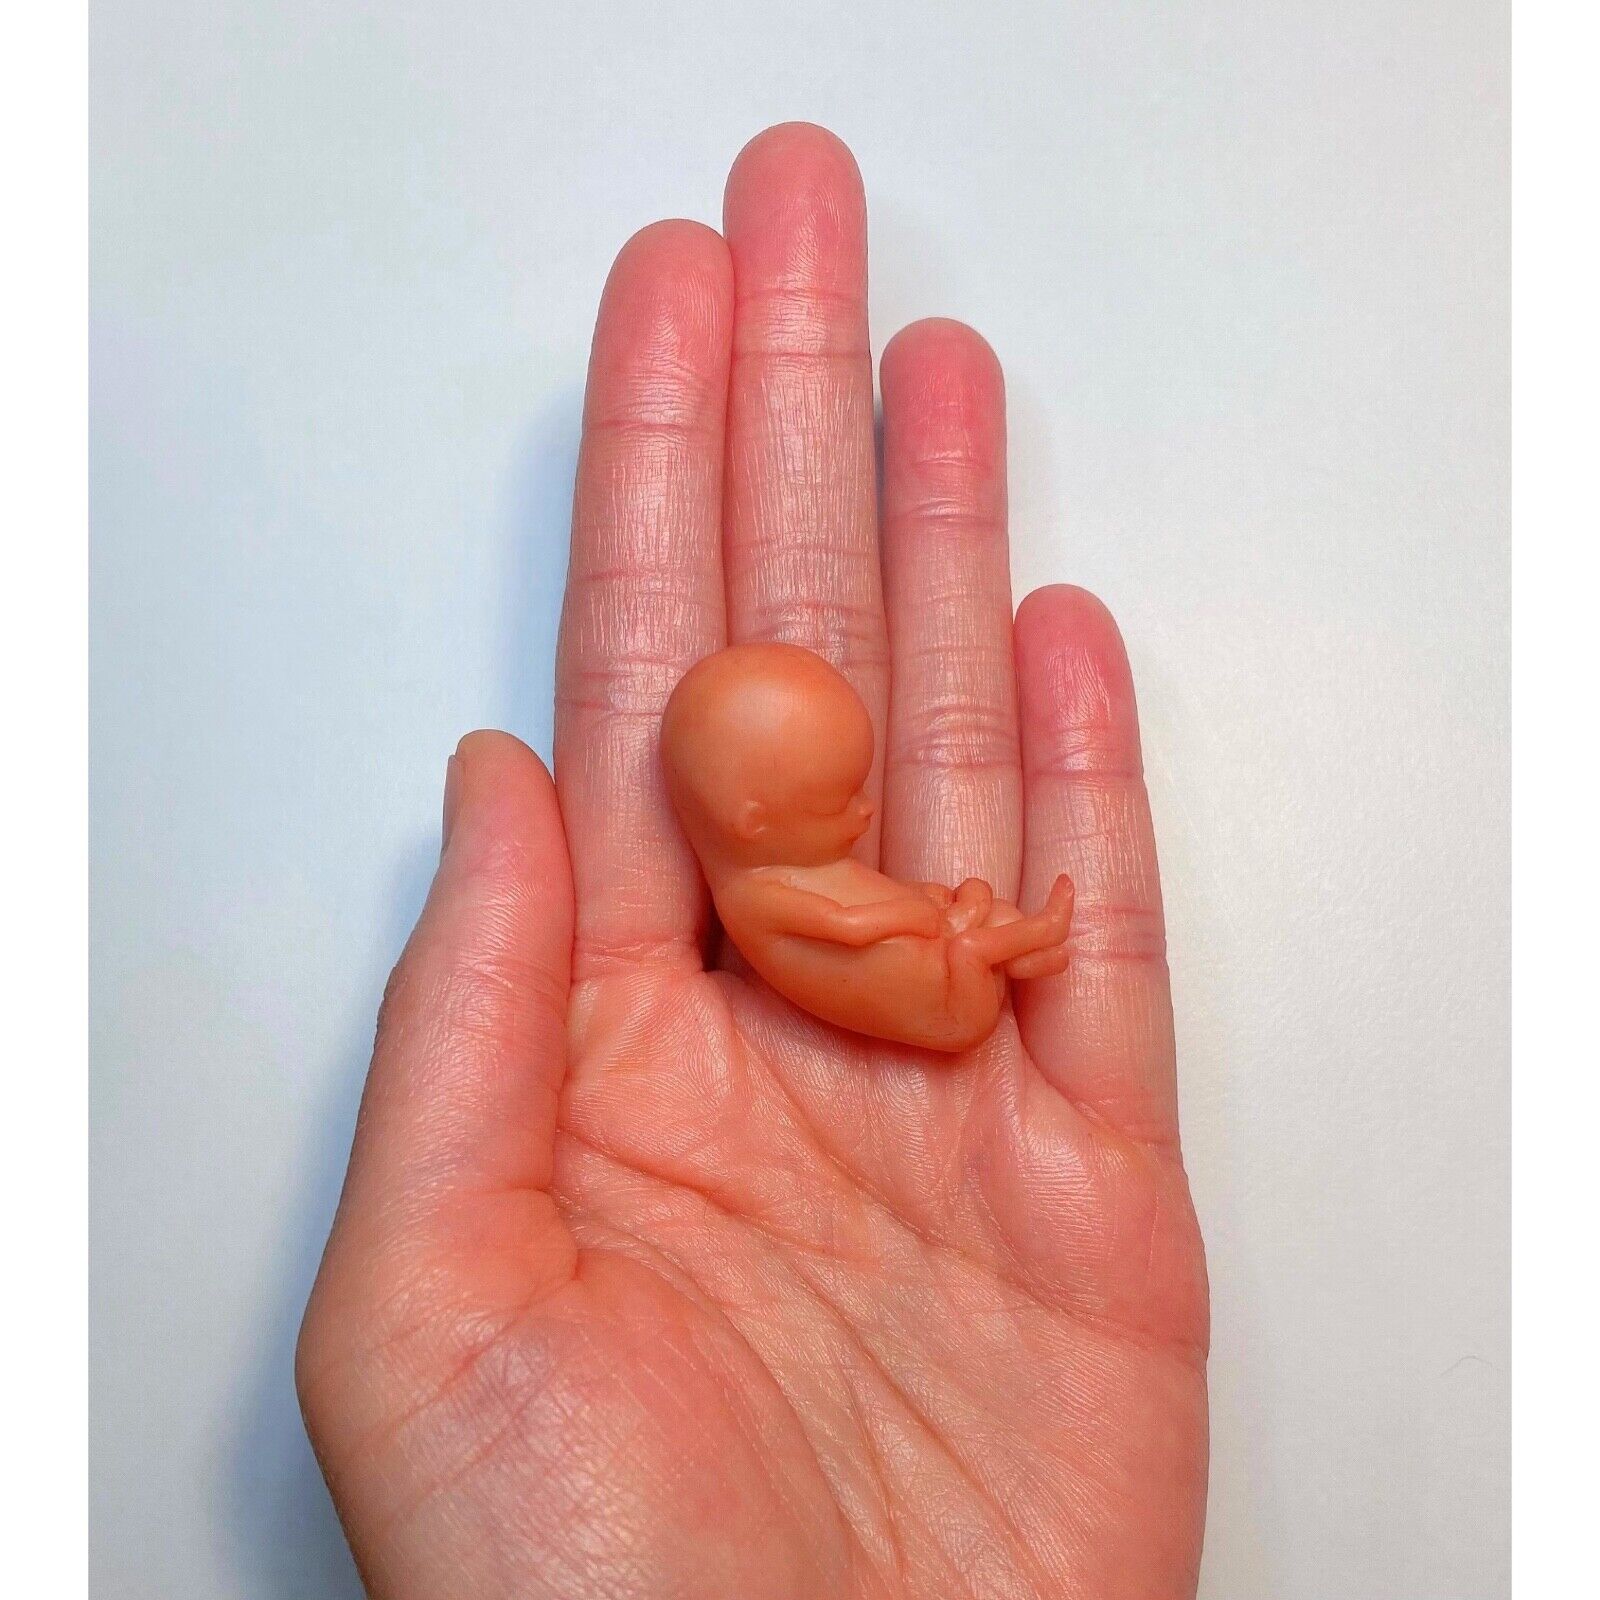 11 Weeks Baby Fetus, Stage of Fetal Development (Memorial/Miscarriage/Keepsake)